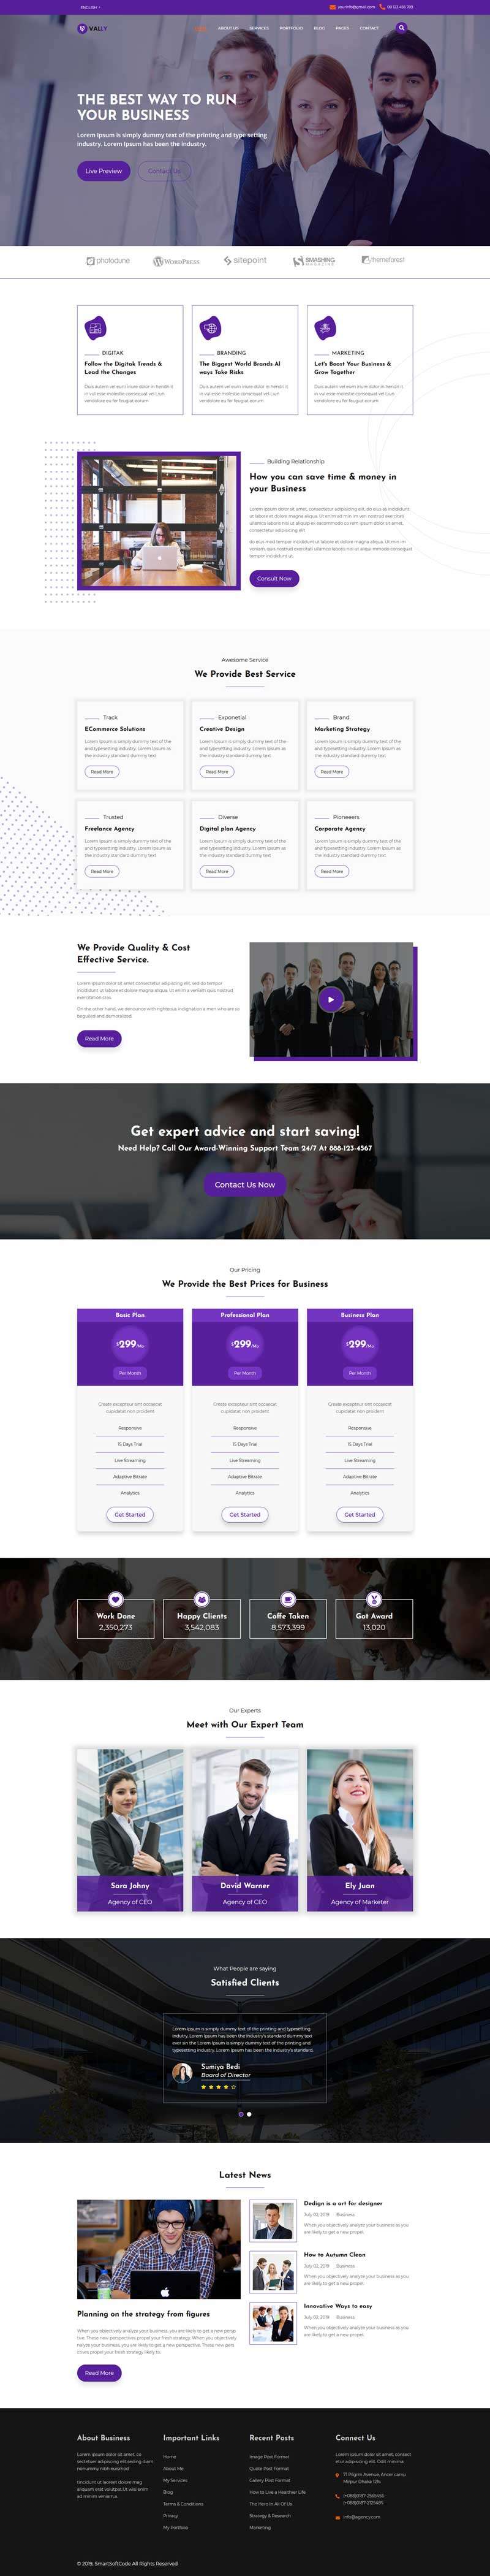 响应式企业商务代理网站HTML5紫色模板6473